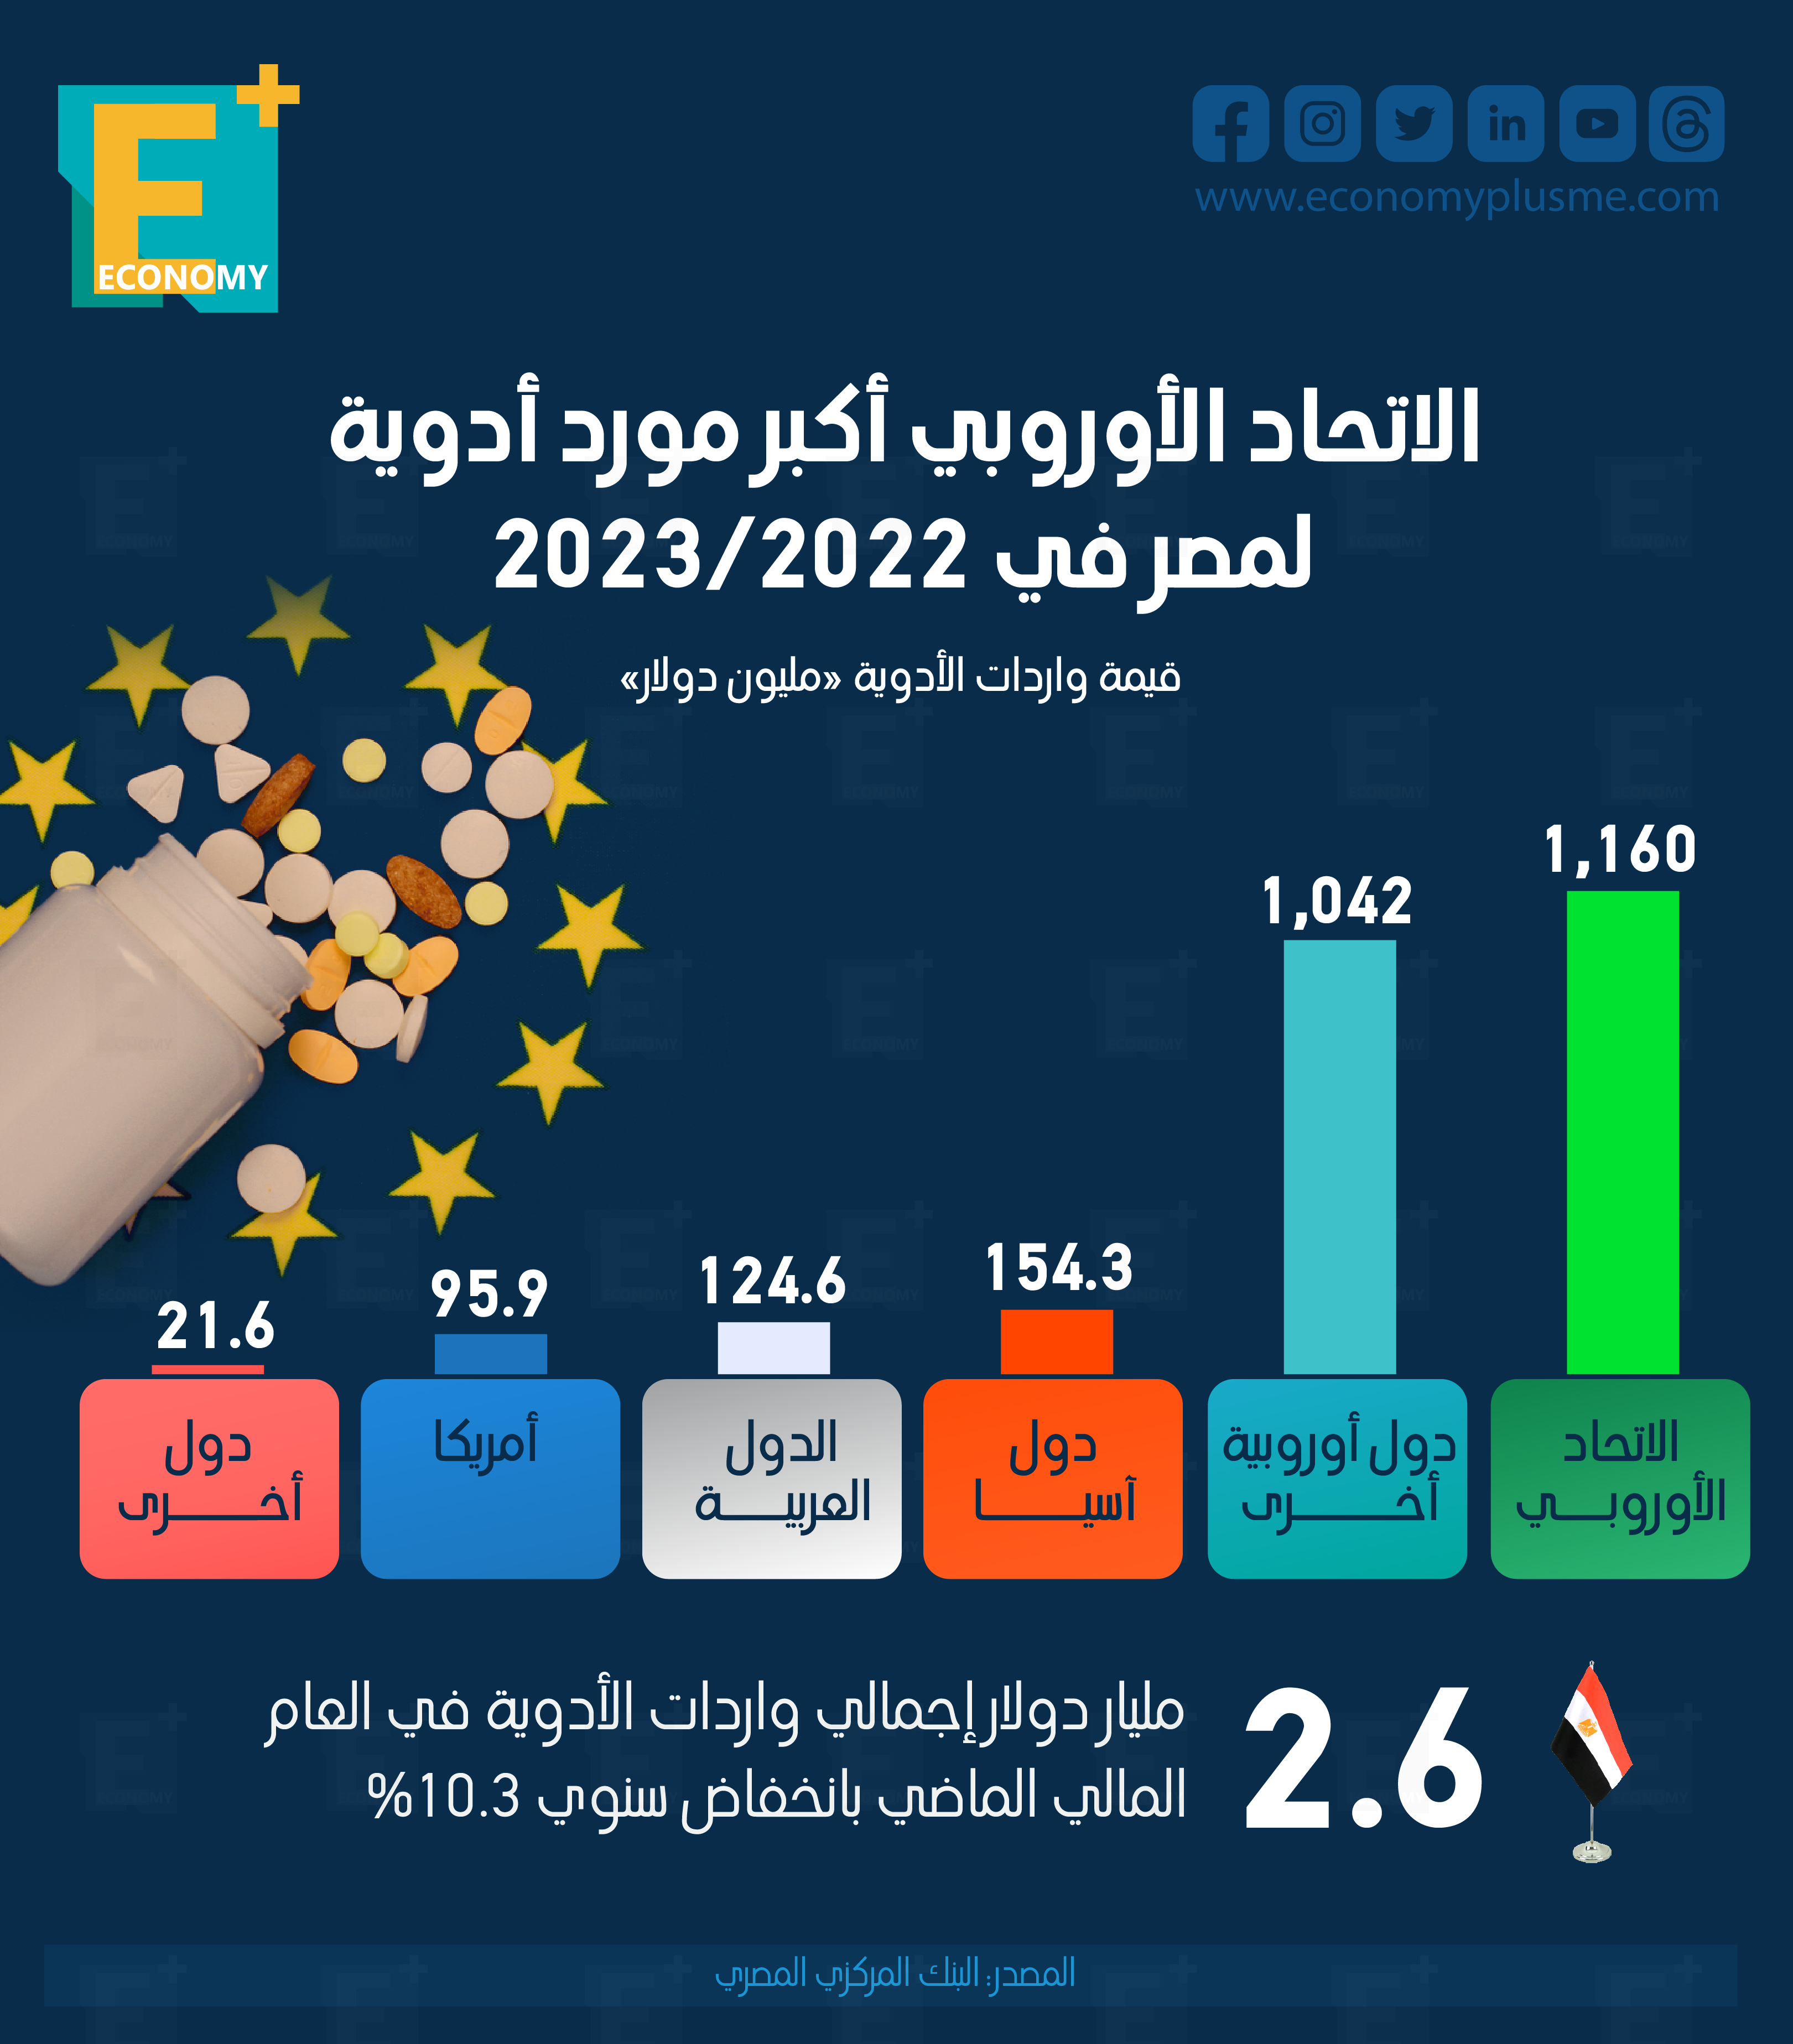 الاتحاد الأوروبي أكبر مورد أدوية لمصر في 2022/2023